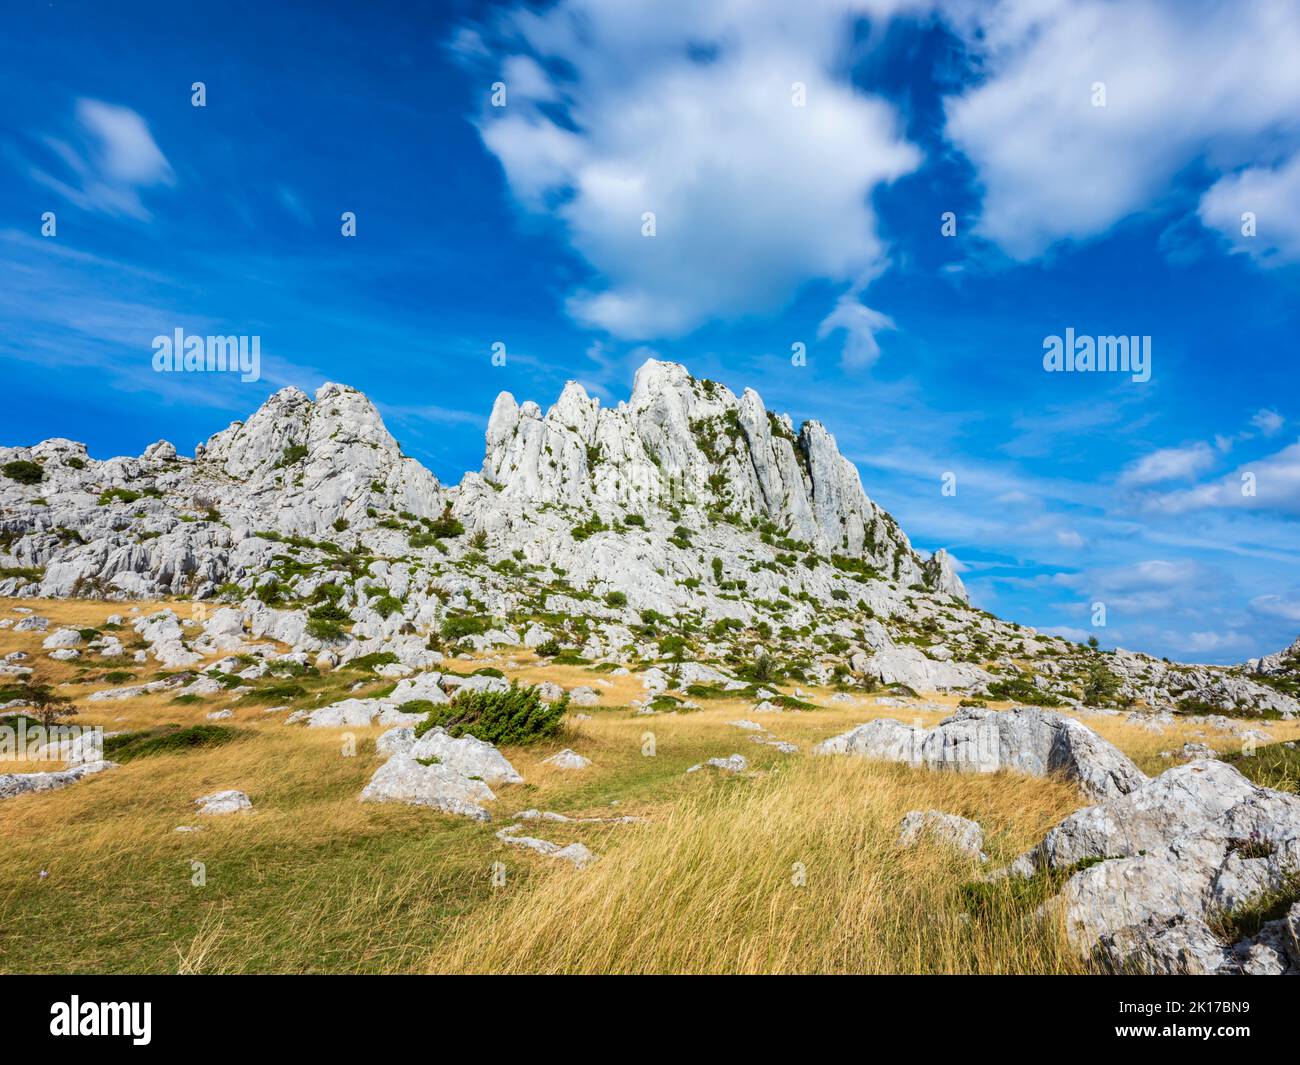 Tulove grede ridge mountain in Croatia Europe Stock Photo